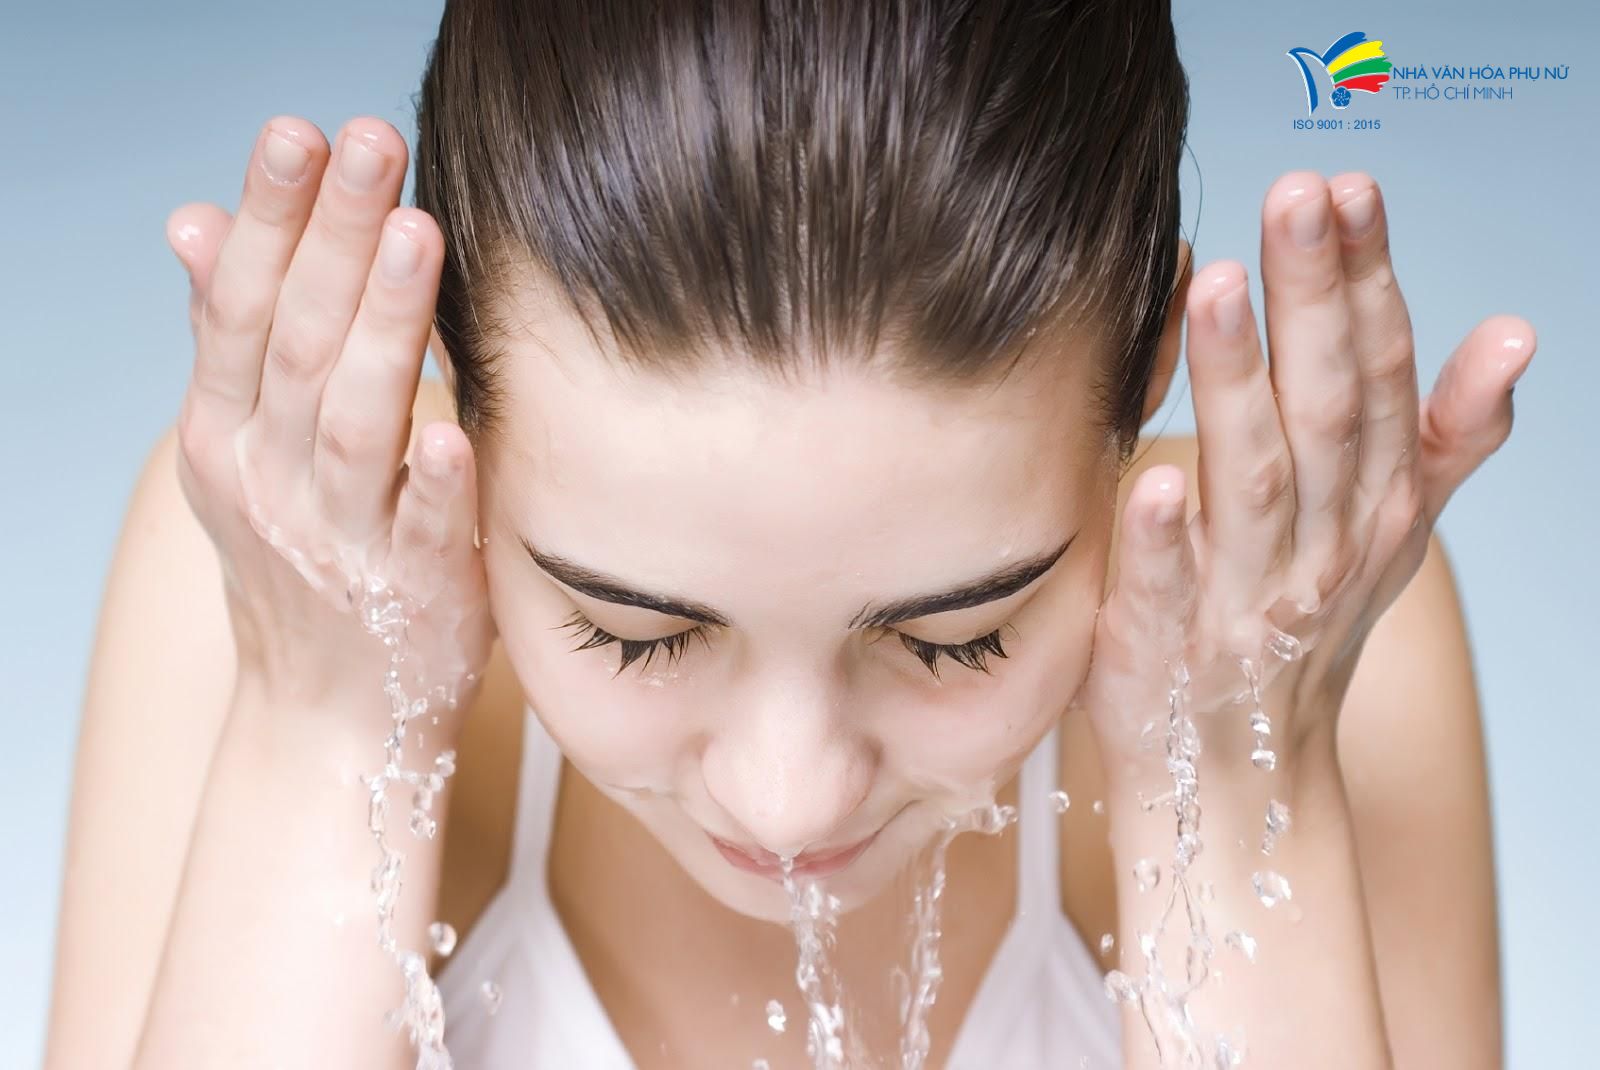 Rửa mặt thật sạch là cách loại bỏ bụi bẩn, chất độc trên da